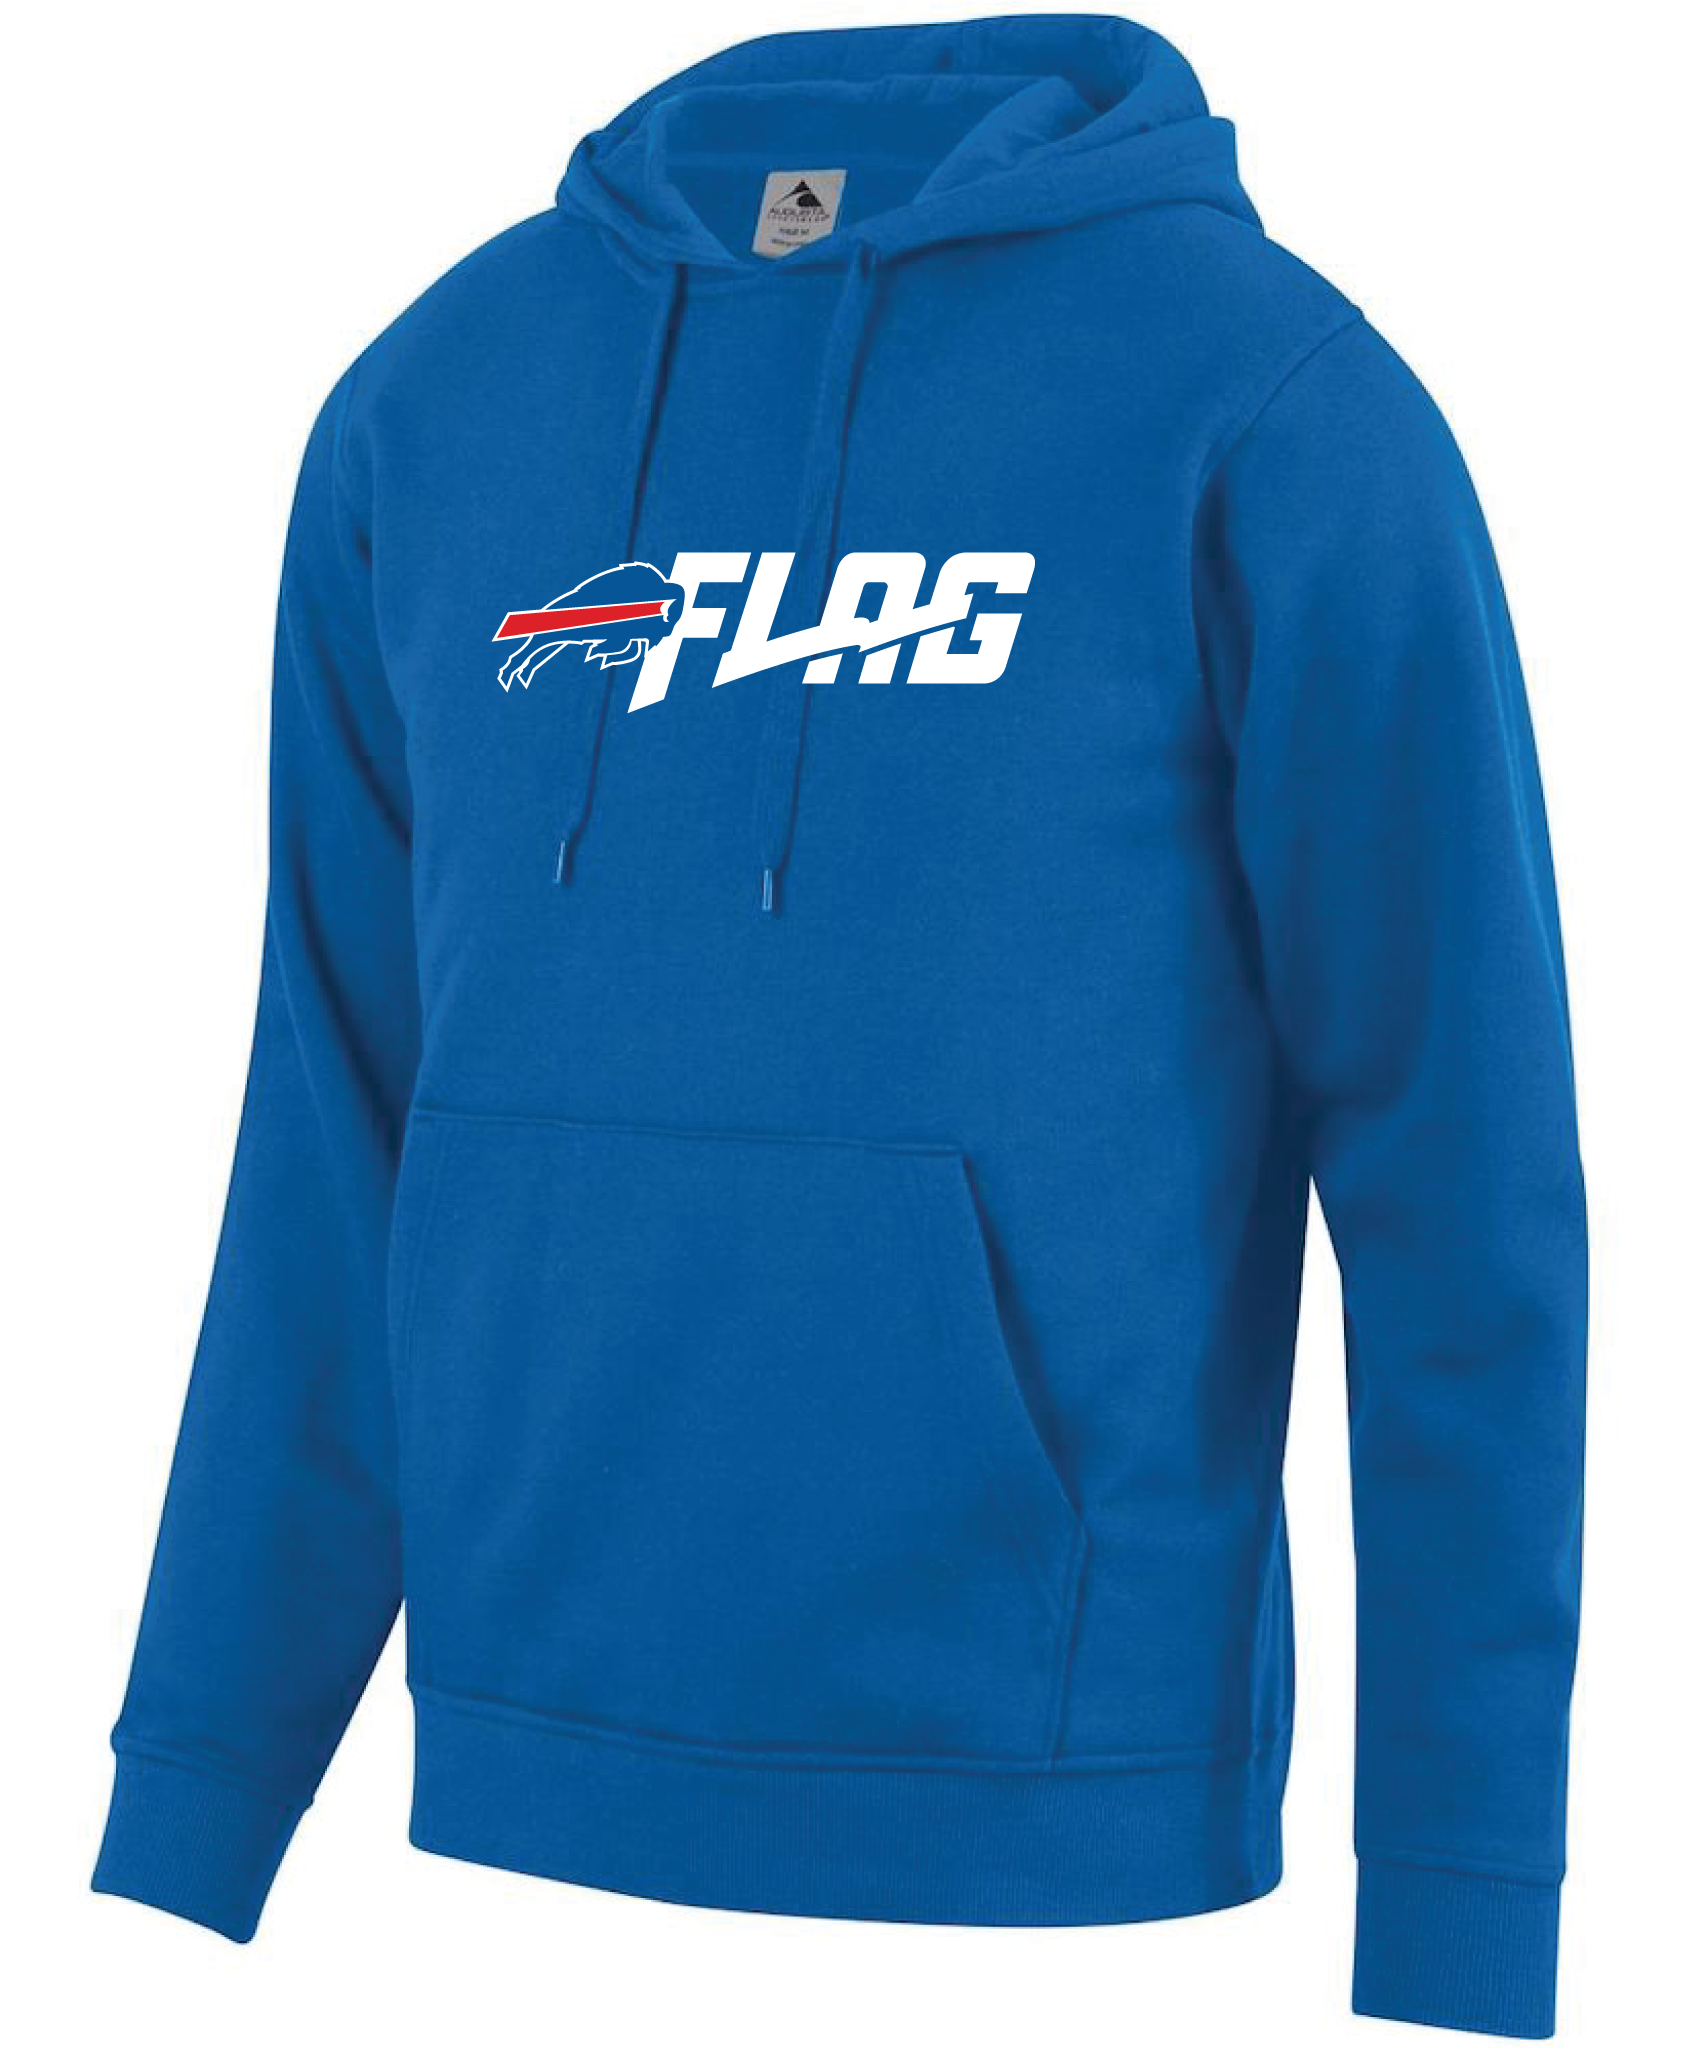 Buffalo Bills – NFL FLAG Fan Shop